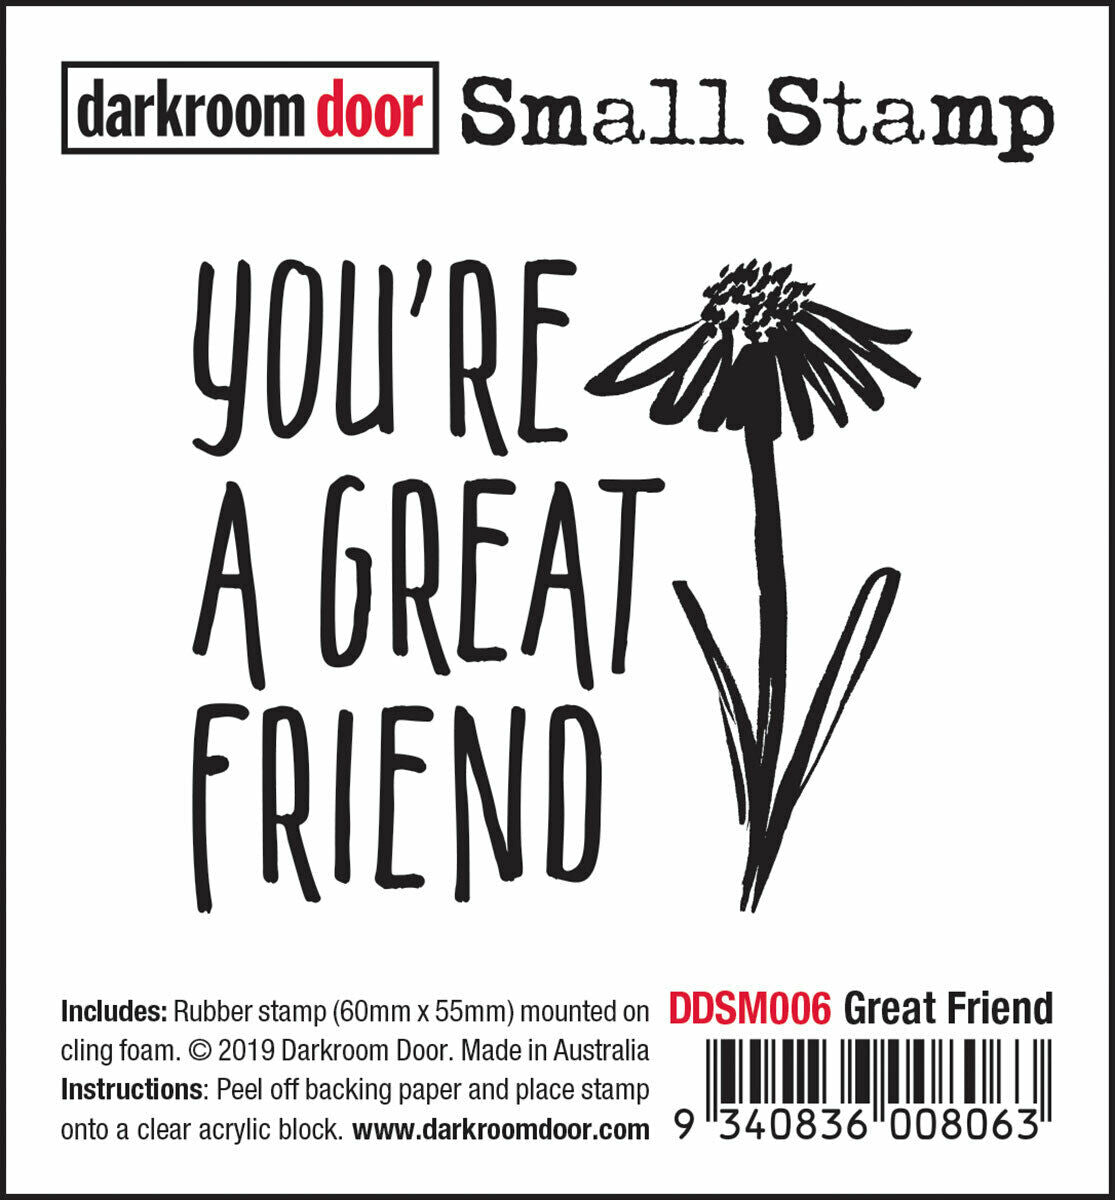 Darkroom Door Small Stamp Great Friend Rubber 55mm x 60mm